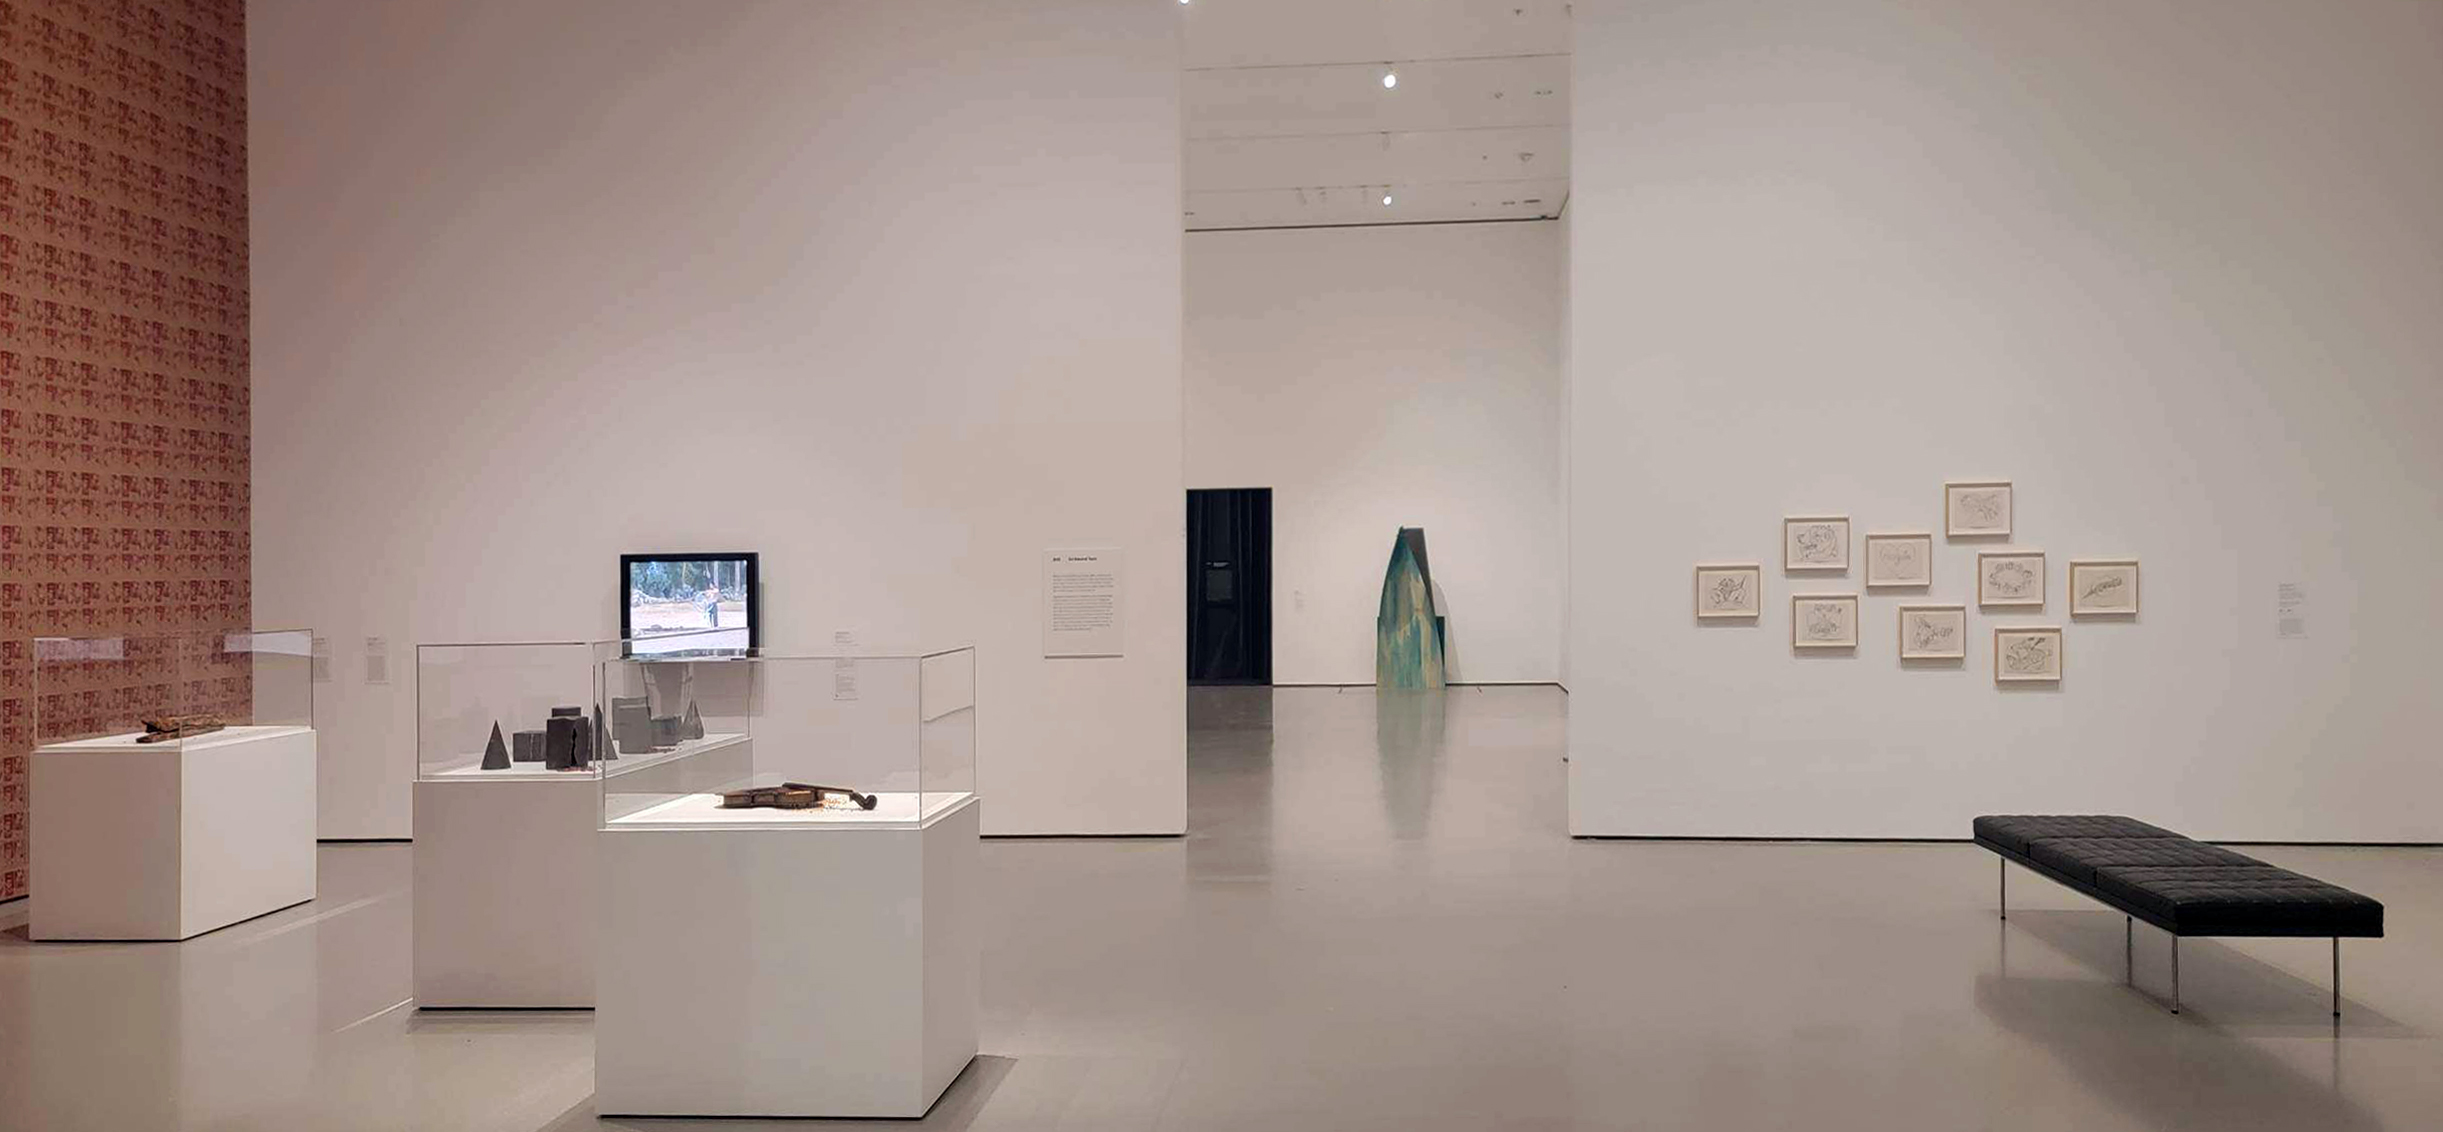 Galerie Barbara Thumm \ Antonio Paucar – An Inward Turn